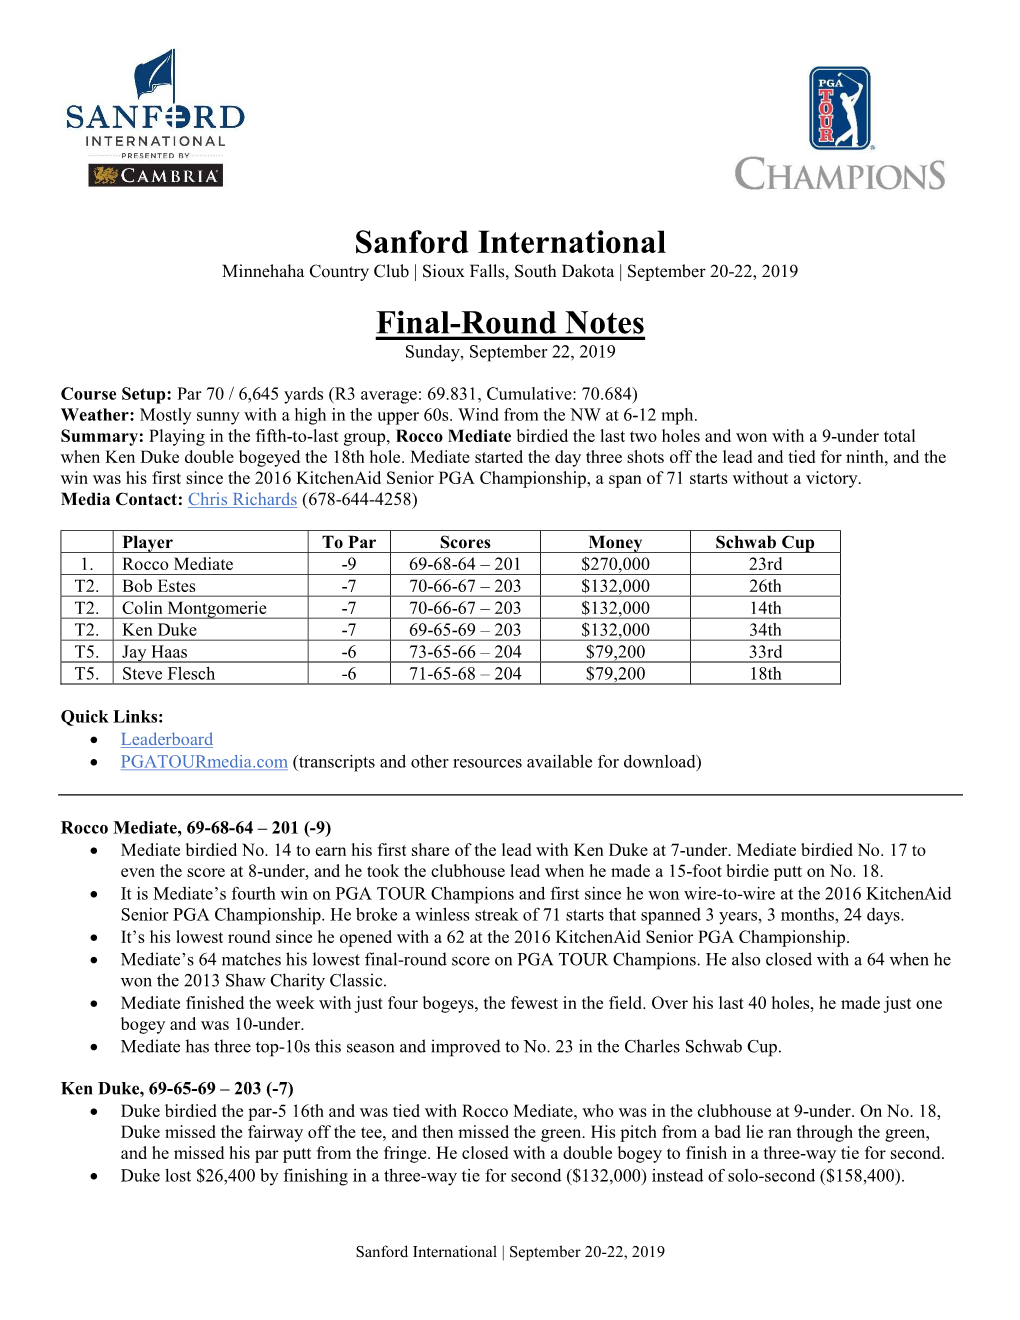 Sanford International Final-Round Notes